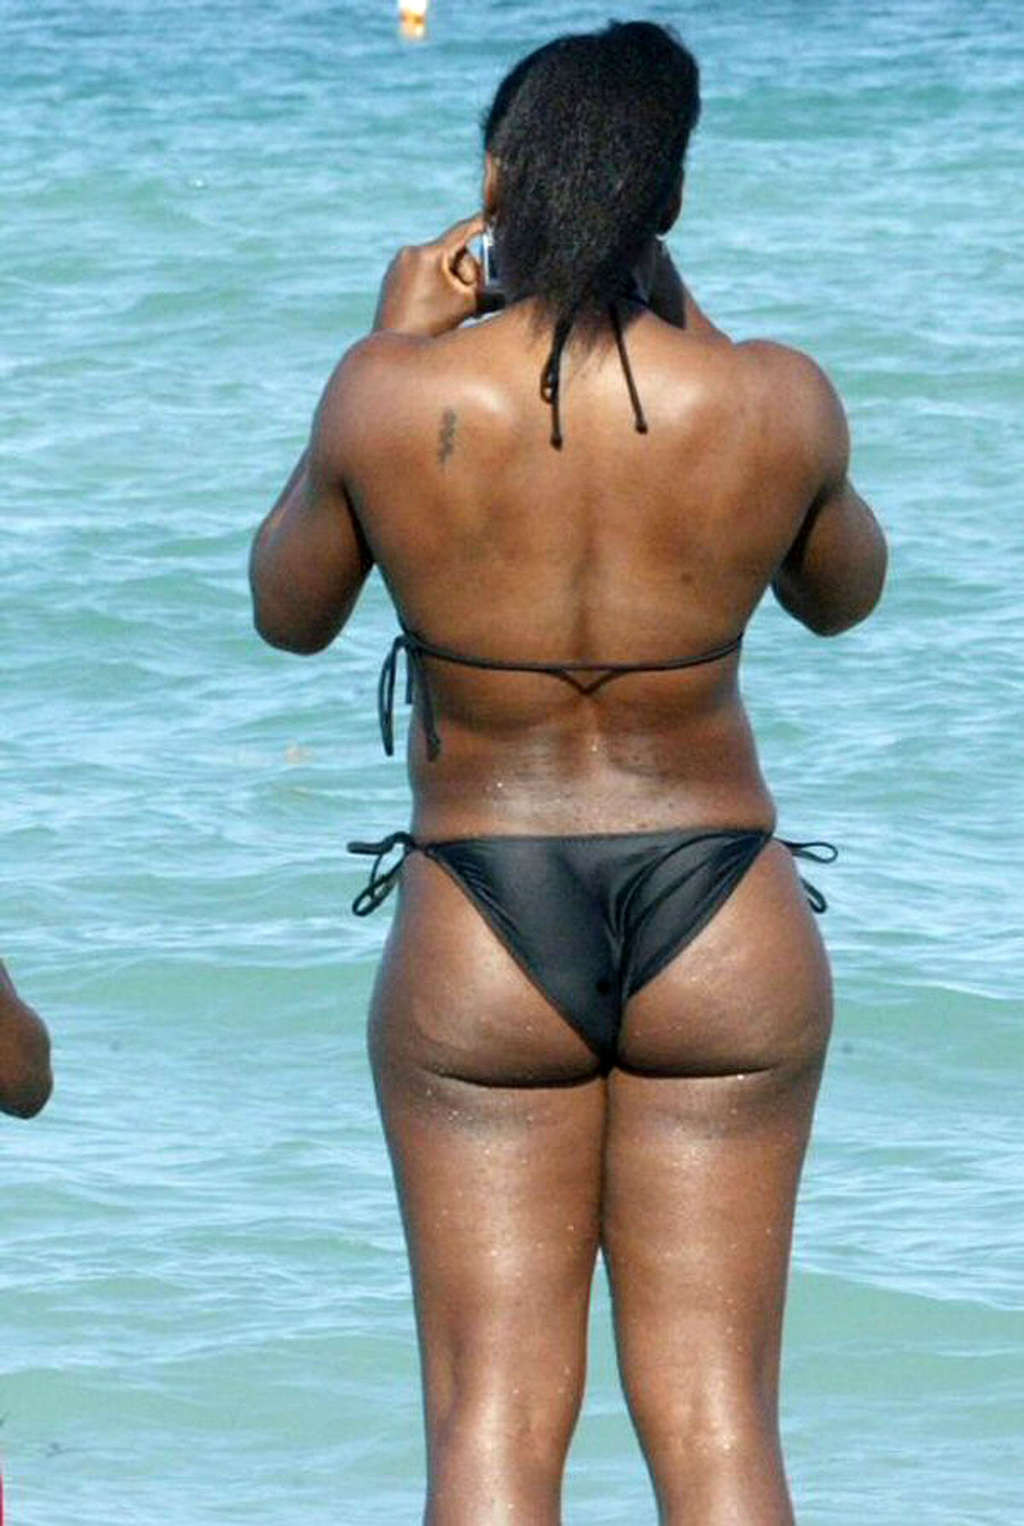 Serena williams mostrando un culo sexy y unas buenas tetas en la playa
 #75376794